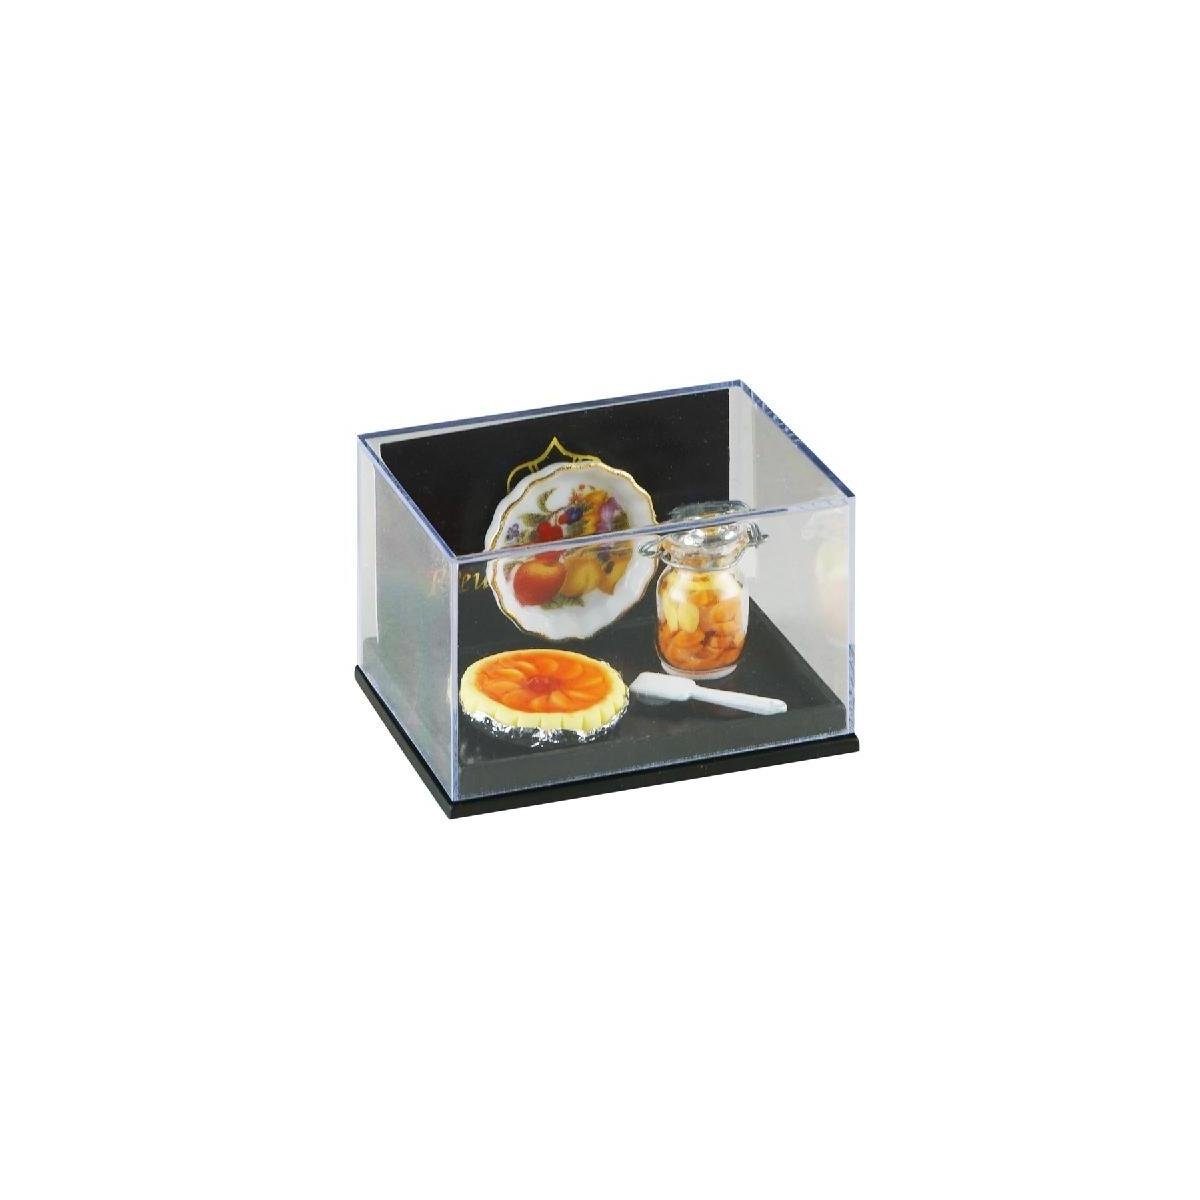 Reutter Porzellan Dekofigur 001.416/5 Pfirsich Tarte, Miniatur 1:12 im Maßstab 